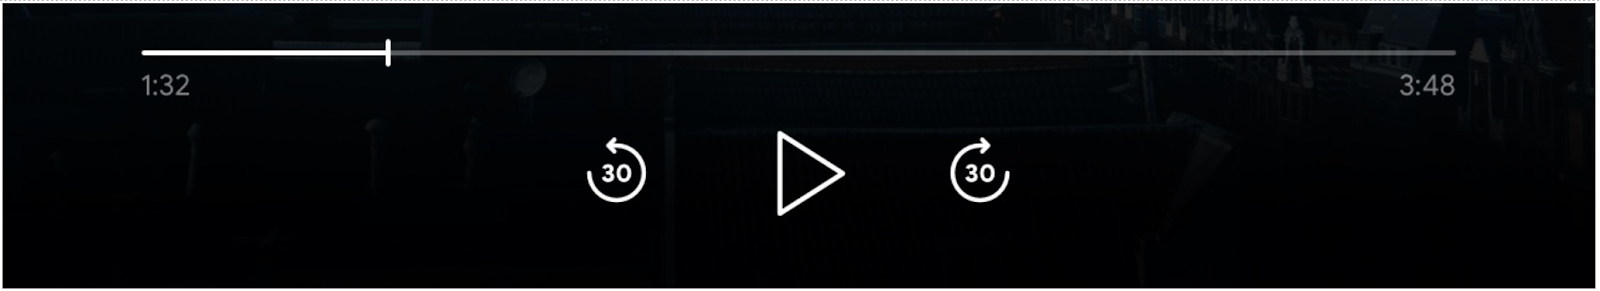 Obraz elementów sterujących odtwarzacza: pasek postępu, przycisk „Odtwórz”, włączone przyciski „Przeskocz do przodu” i „Przeskocz do tyłu”